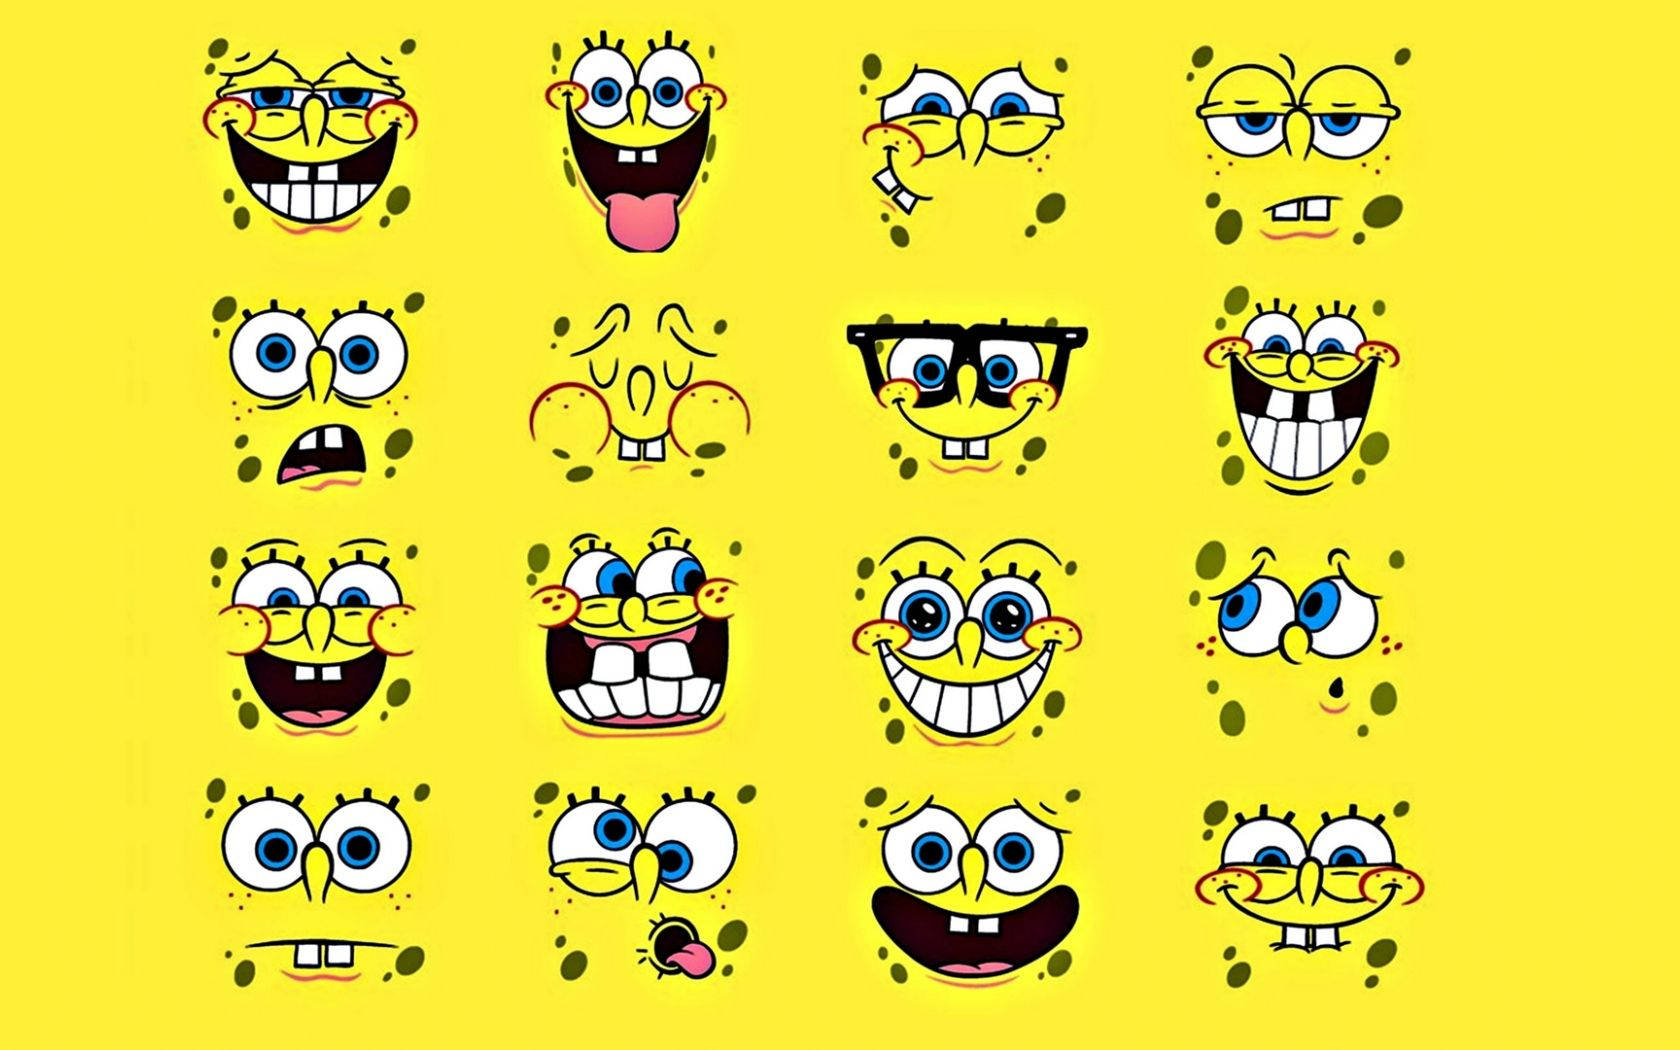 Cool Spongebob Squarepants Yellow Digital Art Wallpaper